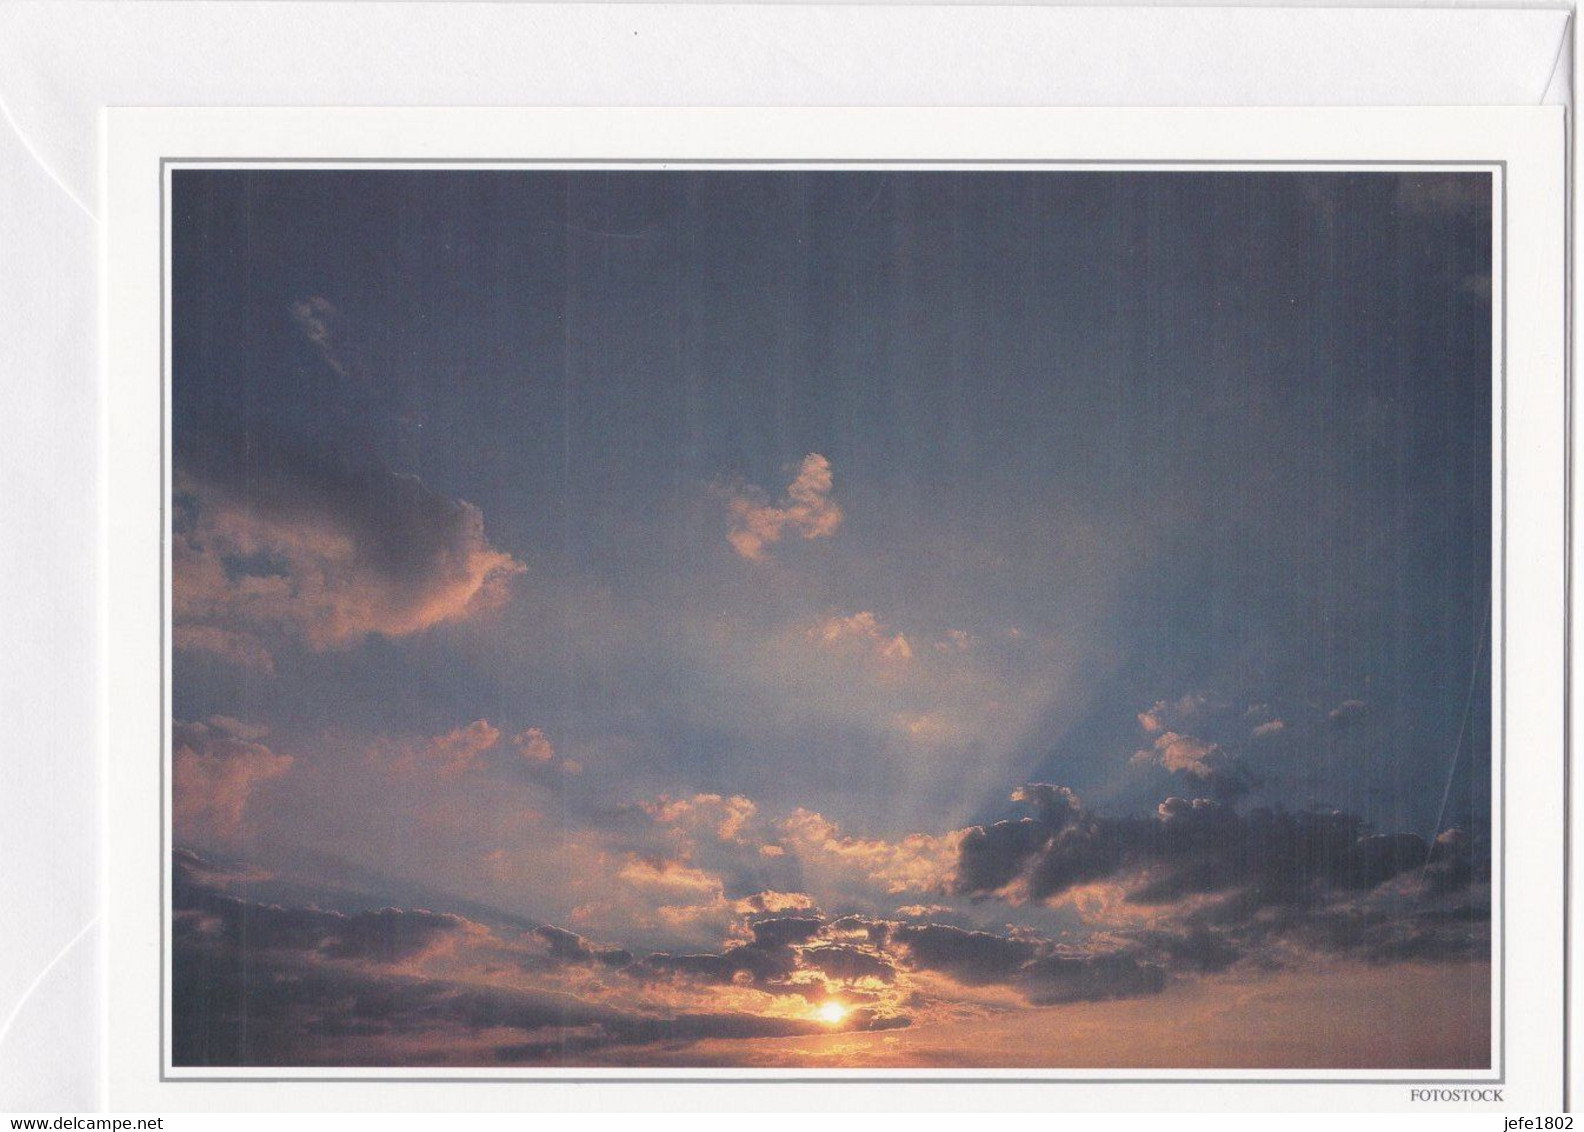 Postogram 089 / 95 - Wolken - Clouds - Fotostock - In Memoriam - Postogram